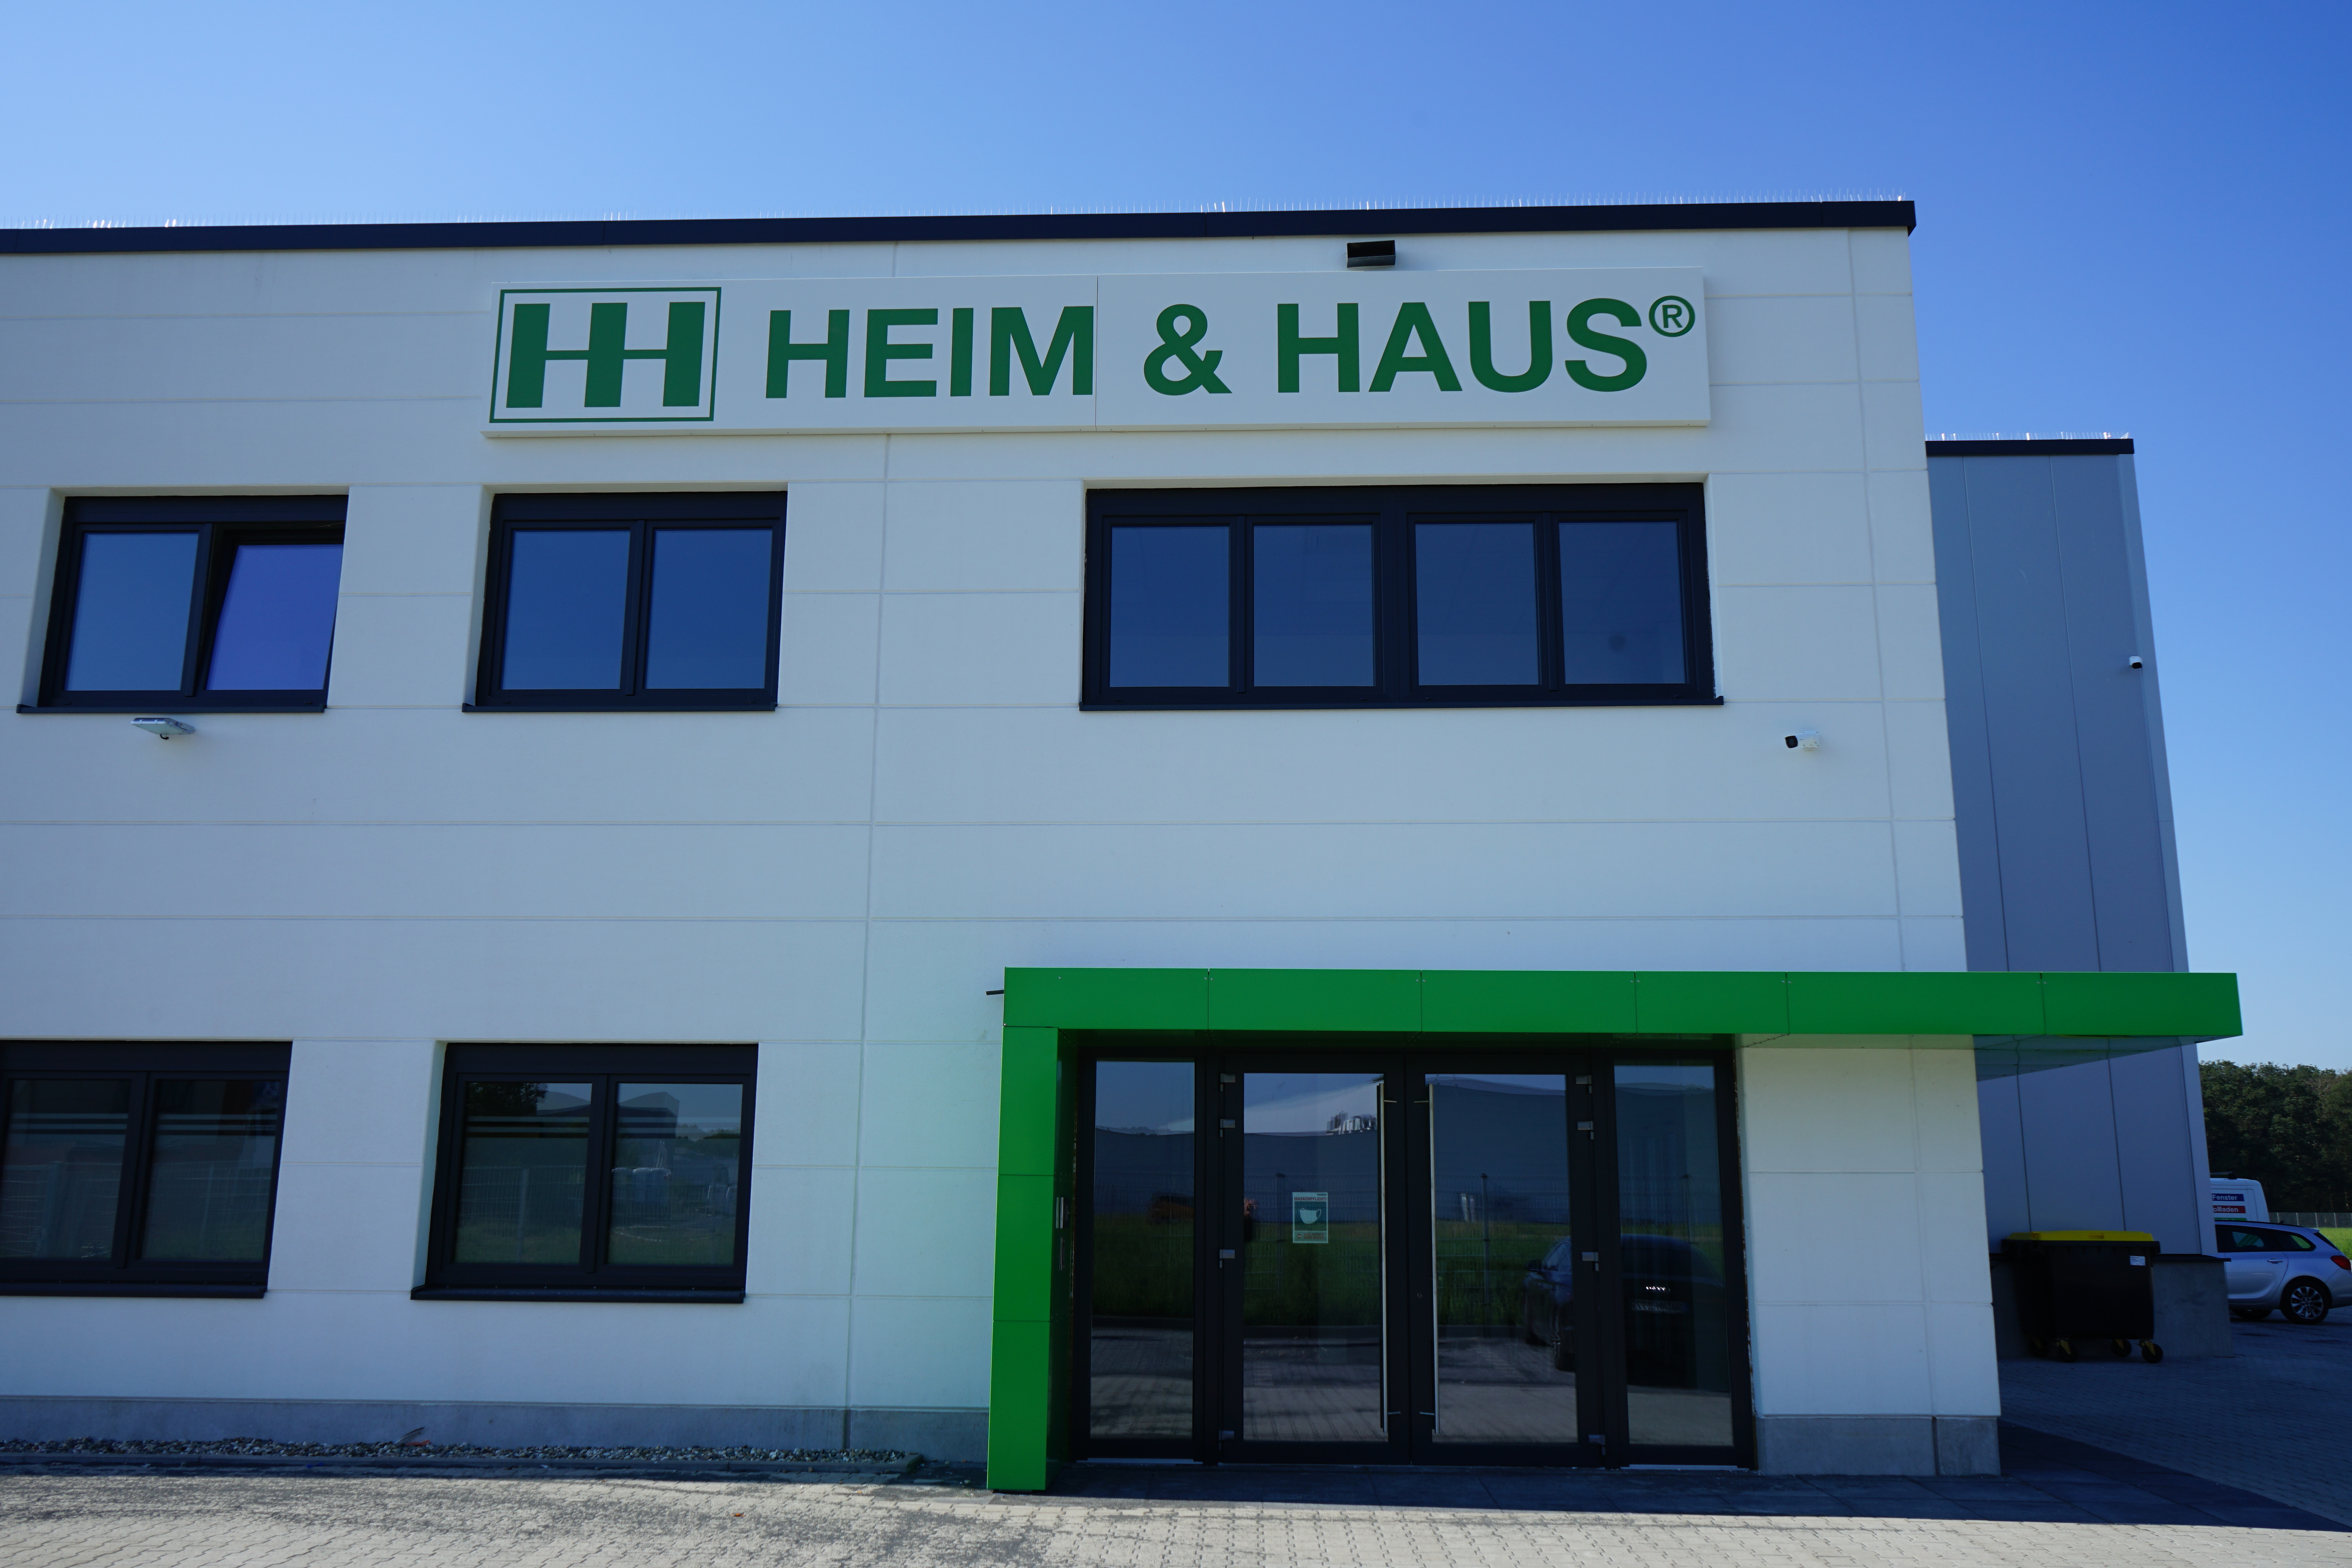 HEIM & HAUS Neues Produktionswerk in Voerde am Niederrhein